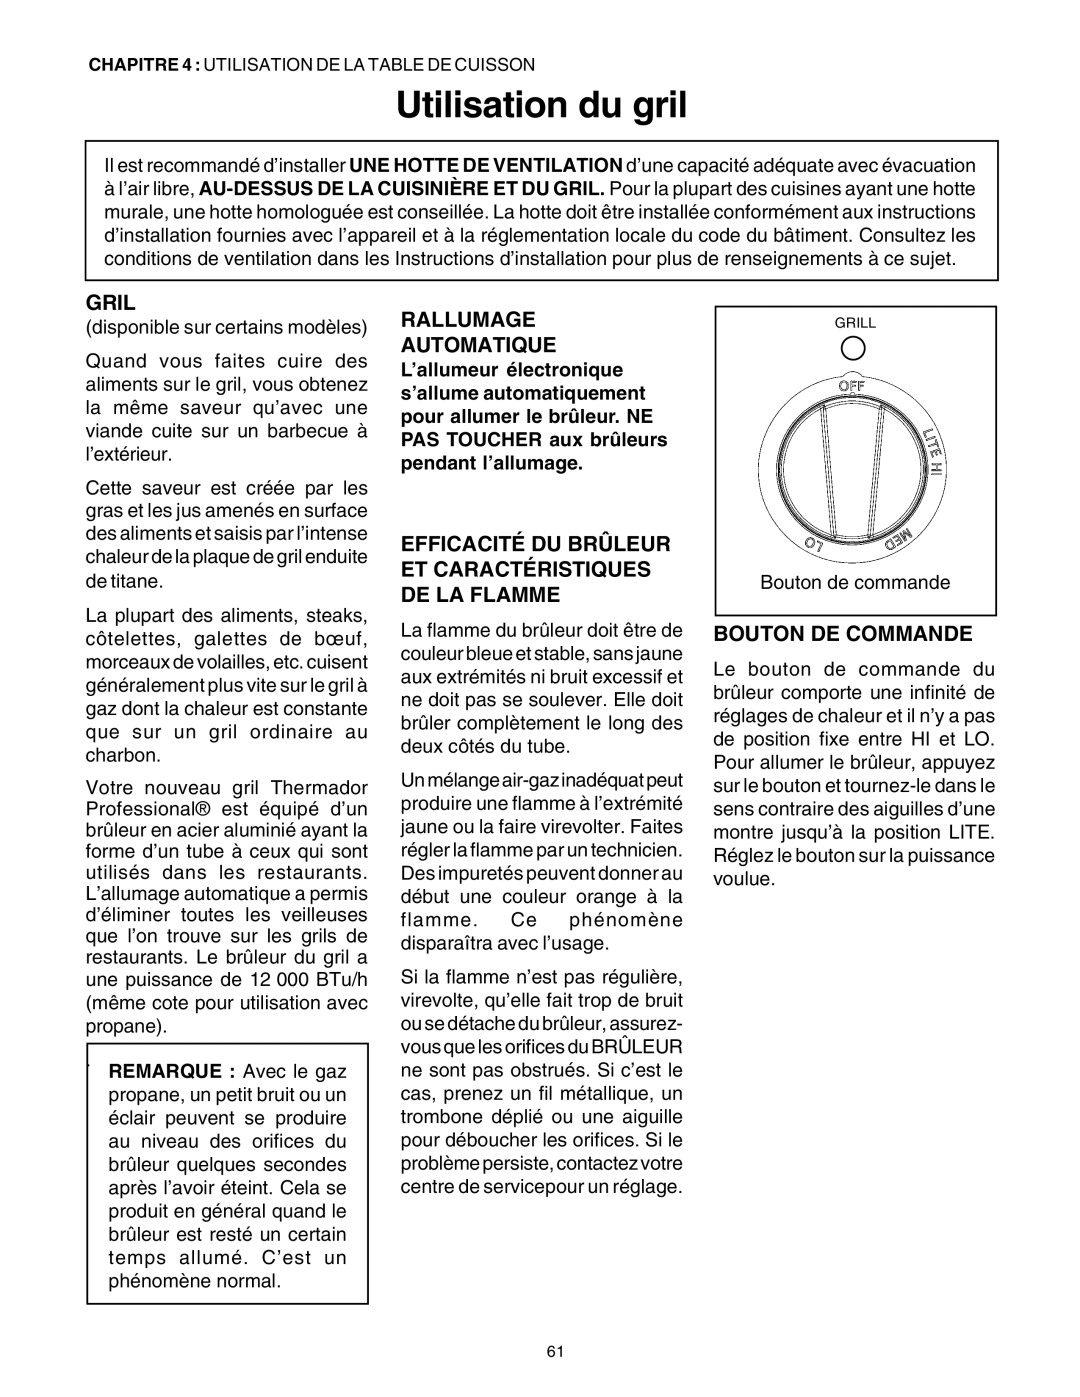 Thermador PRG36, PRG30 manual Utilisation du gril, Gril, Bouton De Commande, Rallumage Automatique 